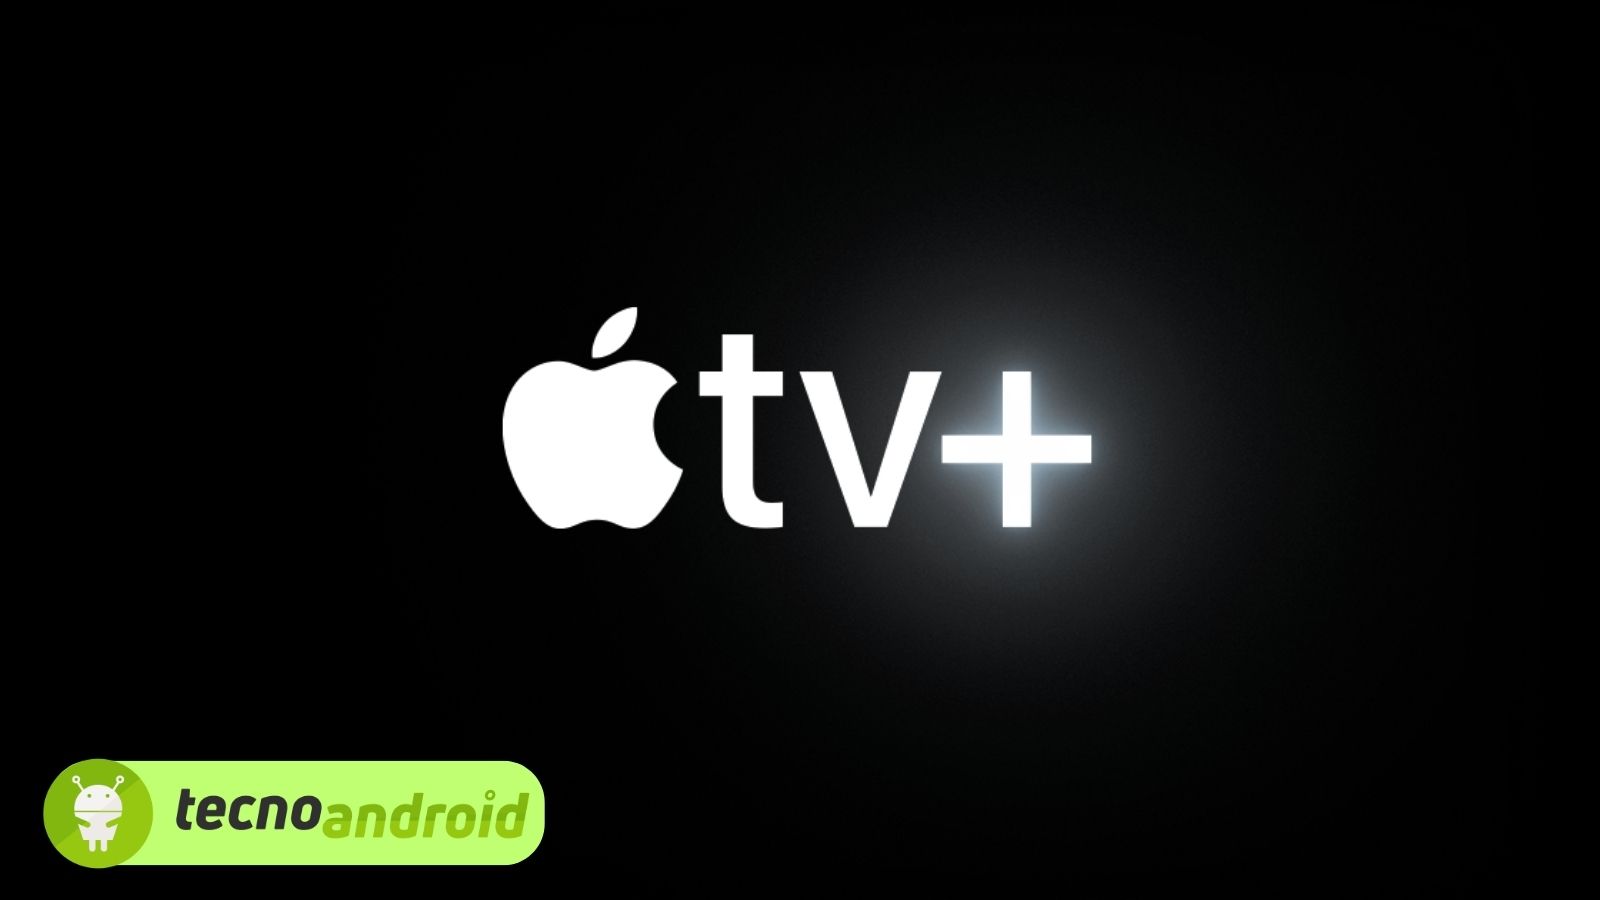 Apple TV+: in arrivo nuove e appassionanti serie TV 